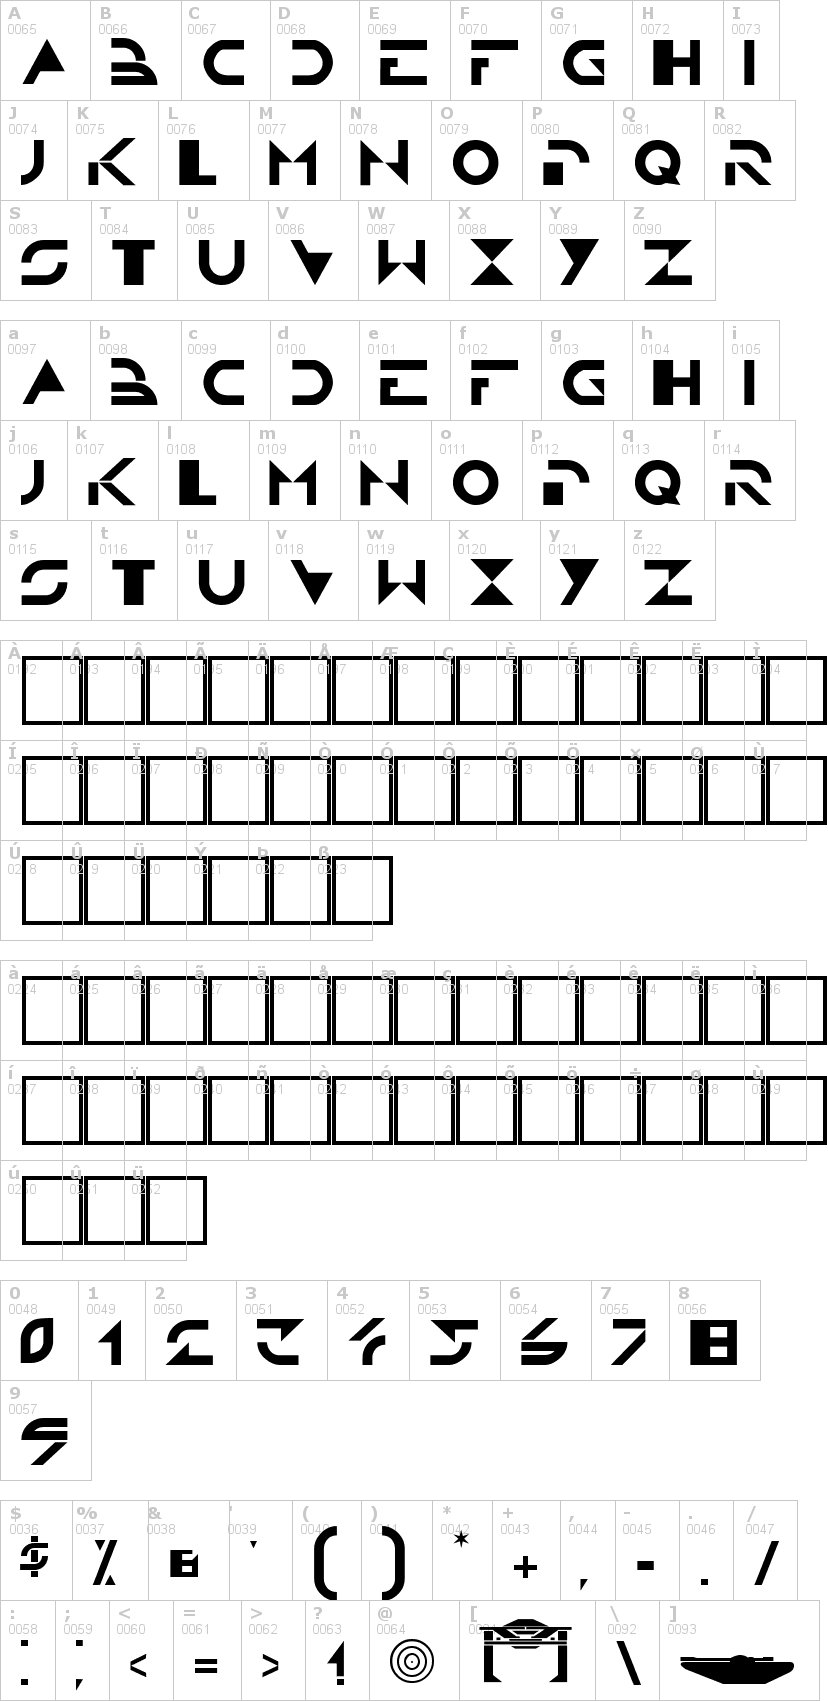 Lettere dell'alfabeto del font tron con le quali è possibile realizzare adesivi prespaziati